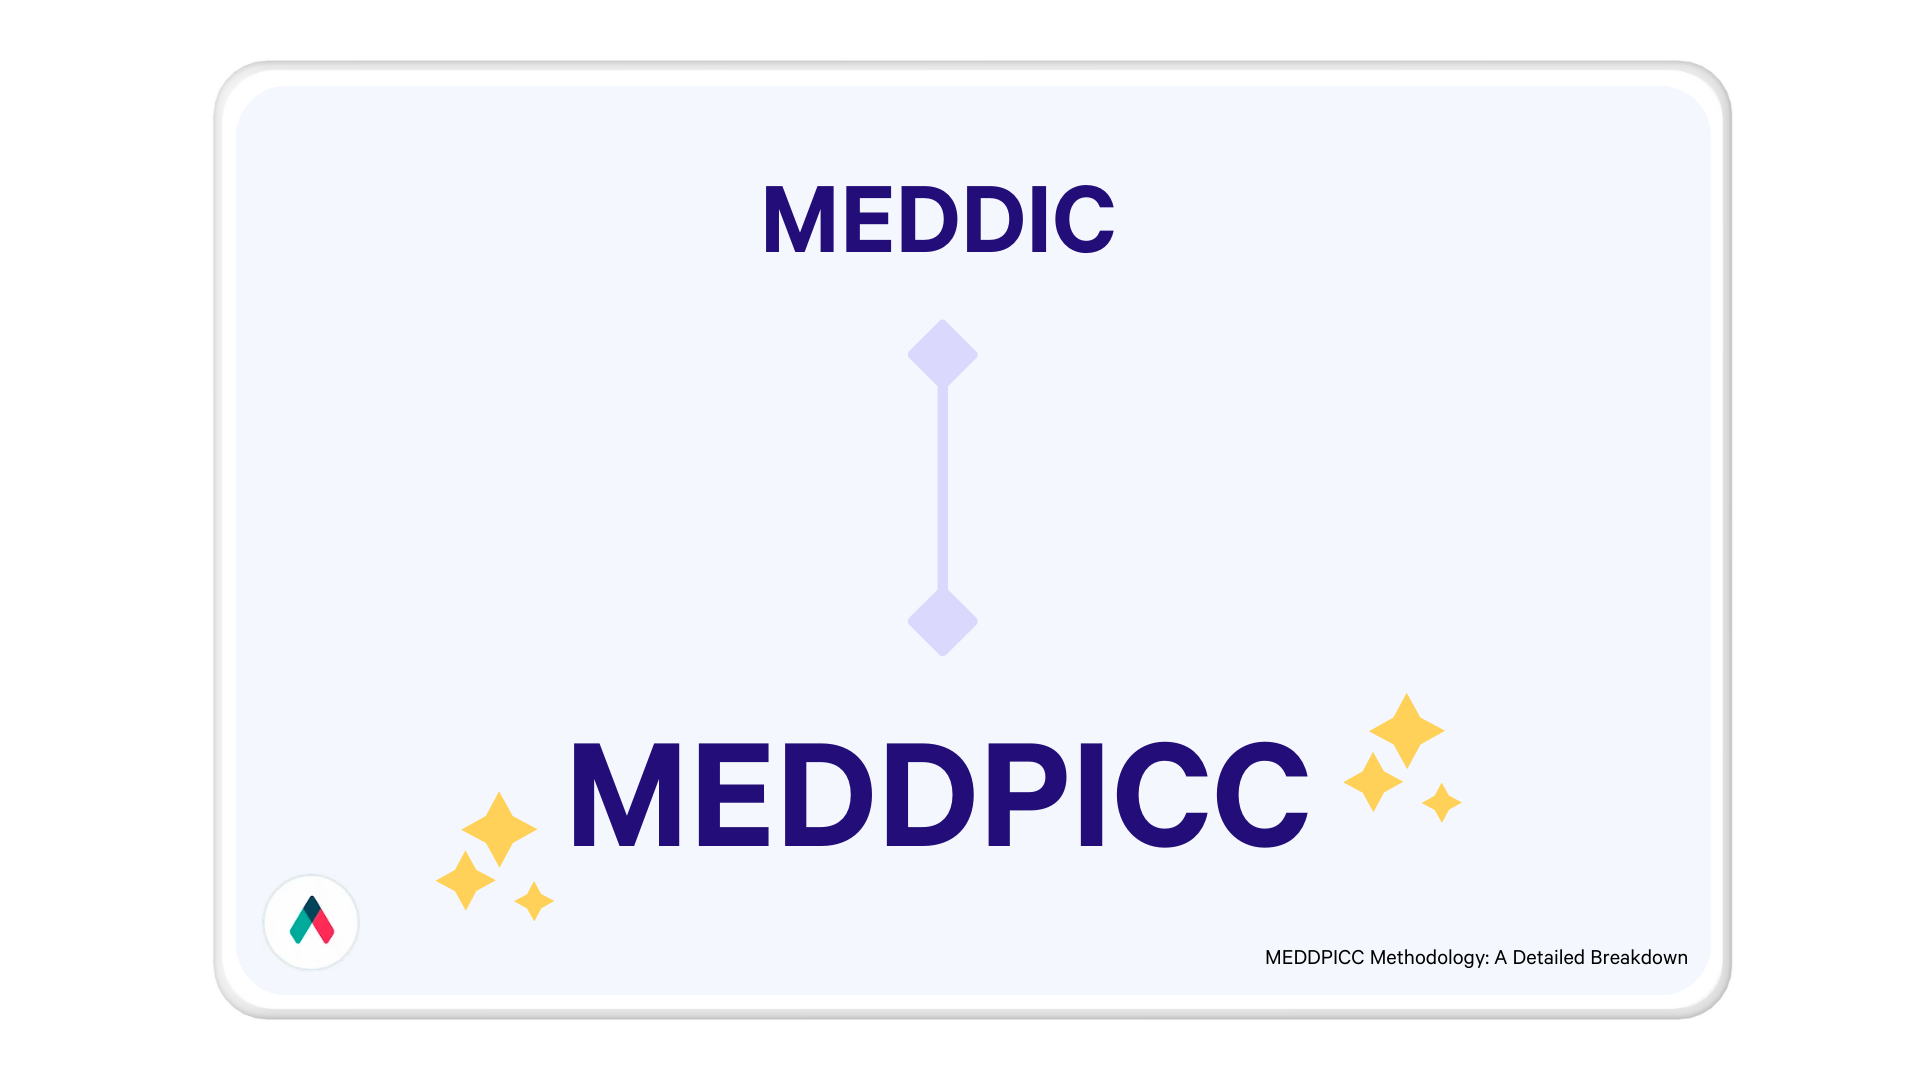 MEDDPICC is the evolution of MEDDIC